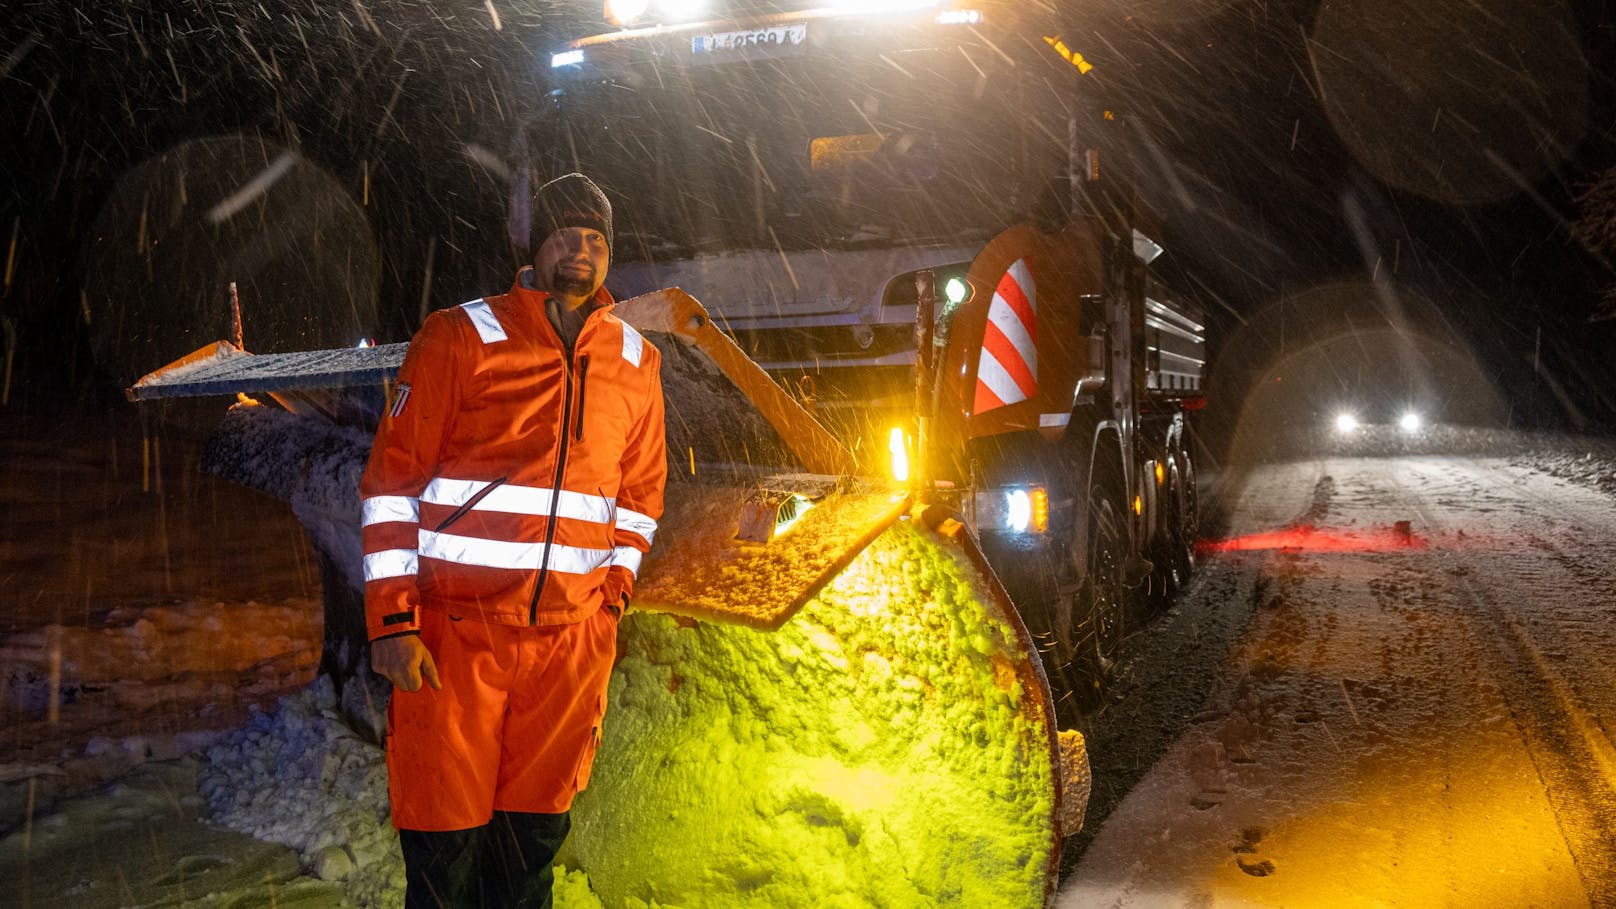 Ein aufmerksamer Schneepflug-Fahrer entdeckte am 25. November in St. Pankraz (OÖ) Reifenspuren, die von der tiefwinterlichen Fahrbahn ins Nichts führten. Ein 34-jähriger Verunglückter verdankt ihm seine Rettung.